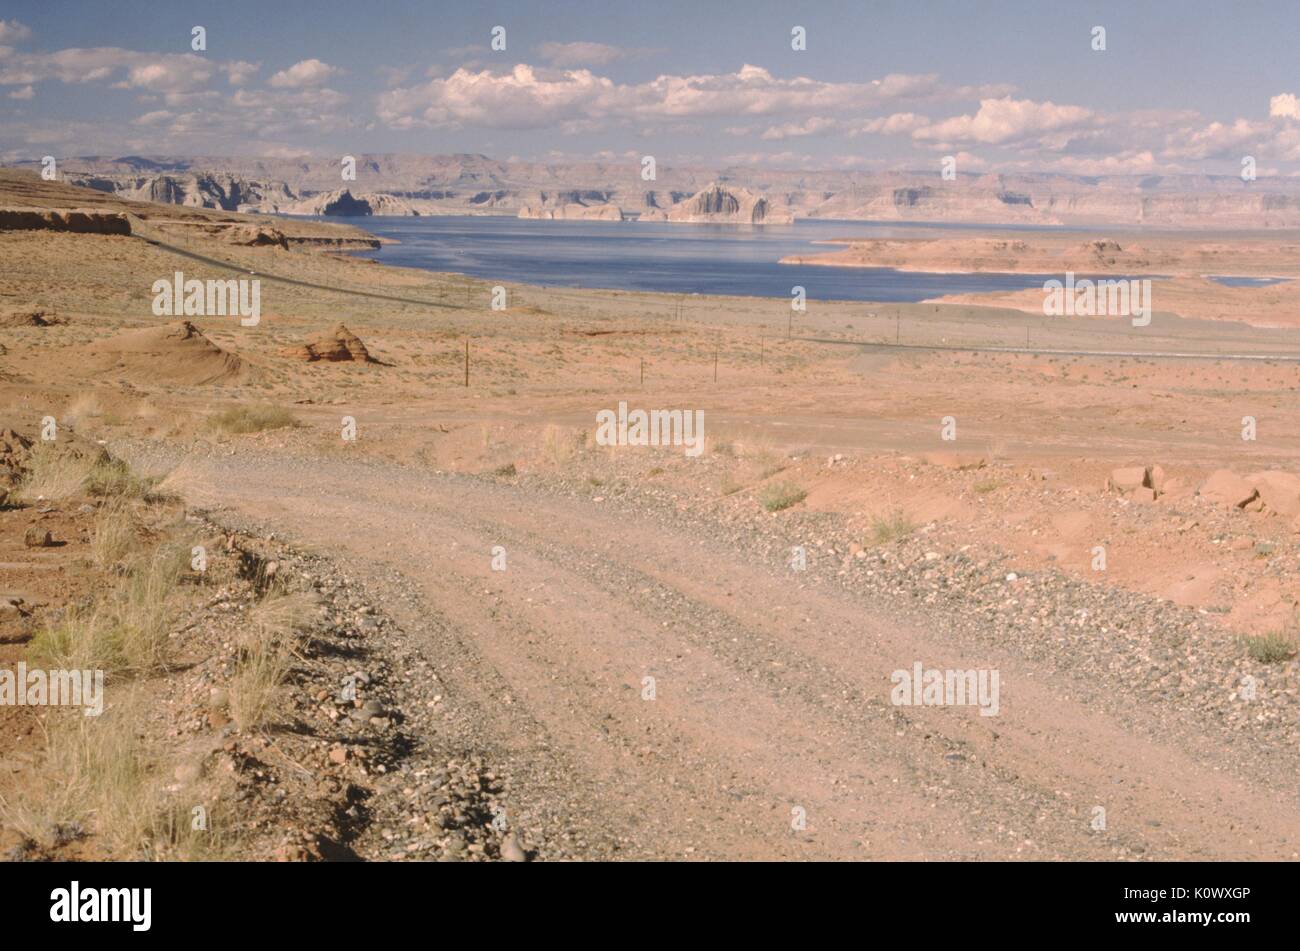 Route de gravier à travers un paysage désertique, des sols d'argile rouge entourant la route, mesas menant jusqu'à une étendue d'eau visible à l'arrière-plan, une couverture nuageuse basse, journée ensoleillée, 1969. Crédit photo Smith Collection/Gado/Getty Images. Banque D'Images